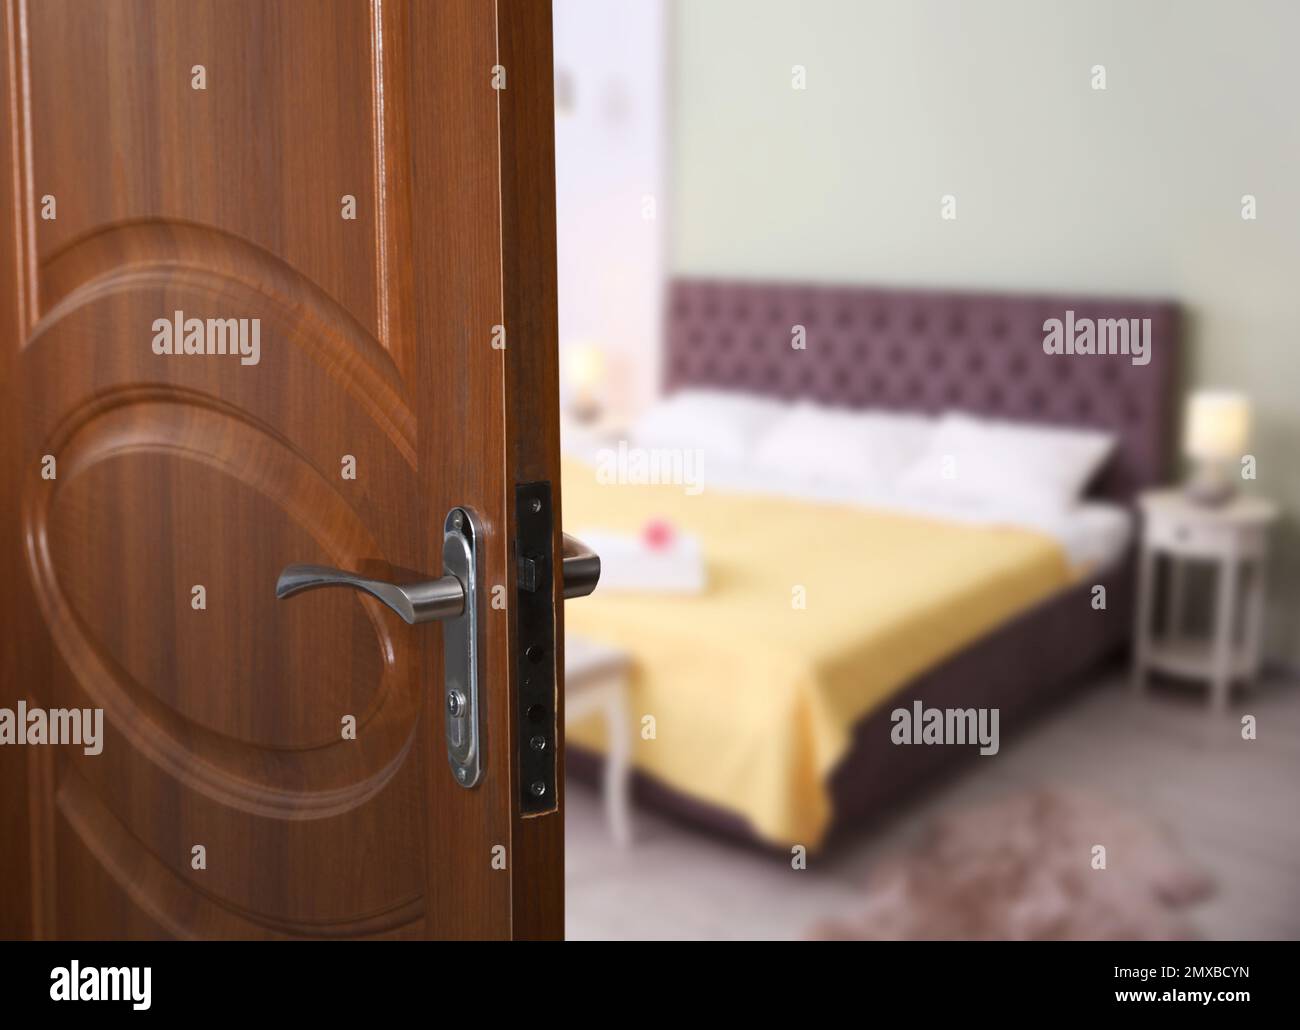 Wooden door open into modern hotel room, closeup Stock Photo